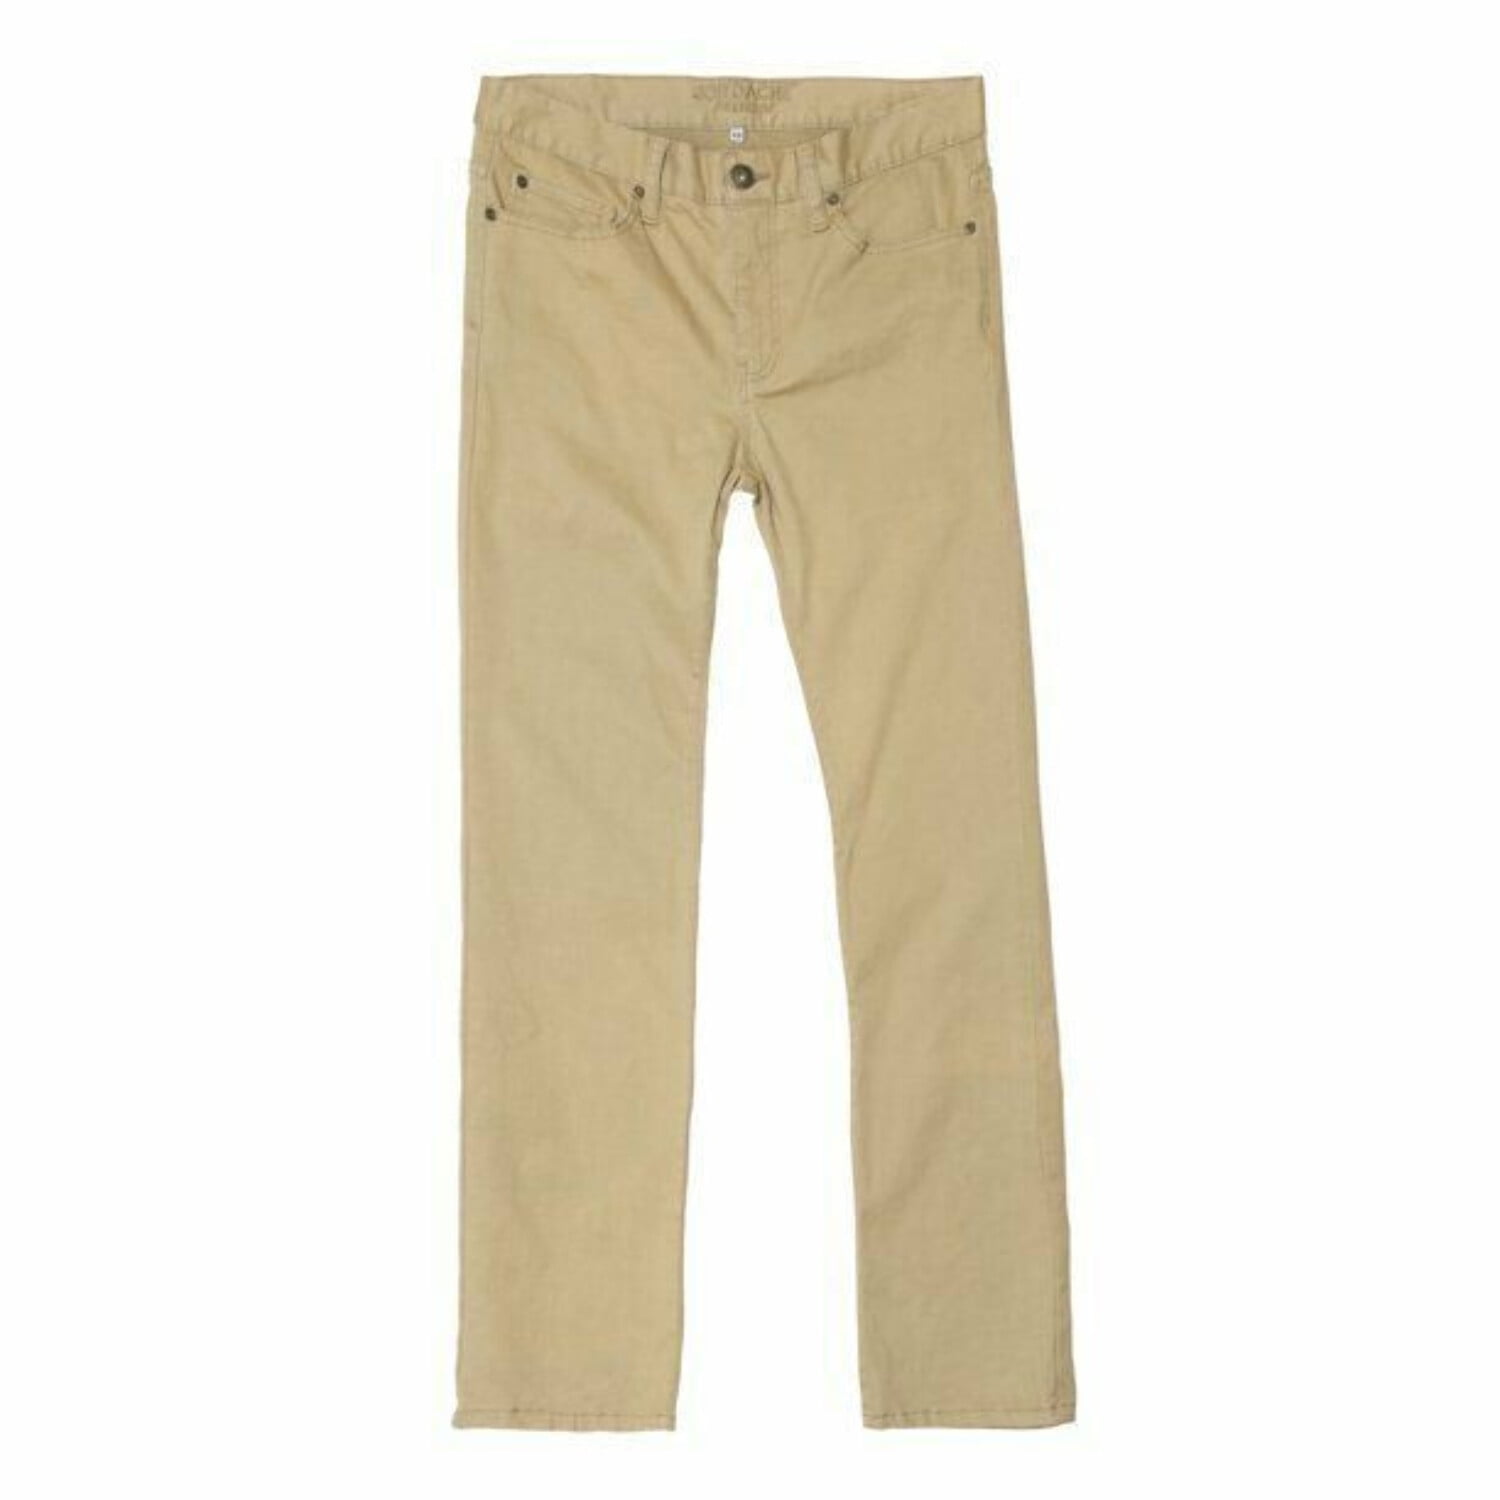 Jordache Men's Skinny Fit Twill Pants - Walmart.com